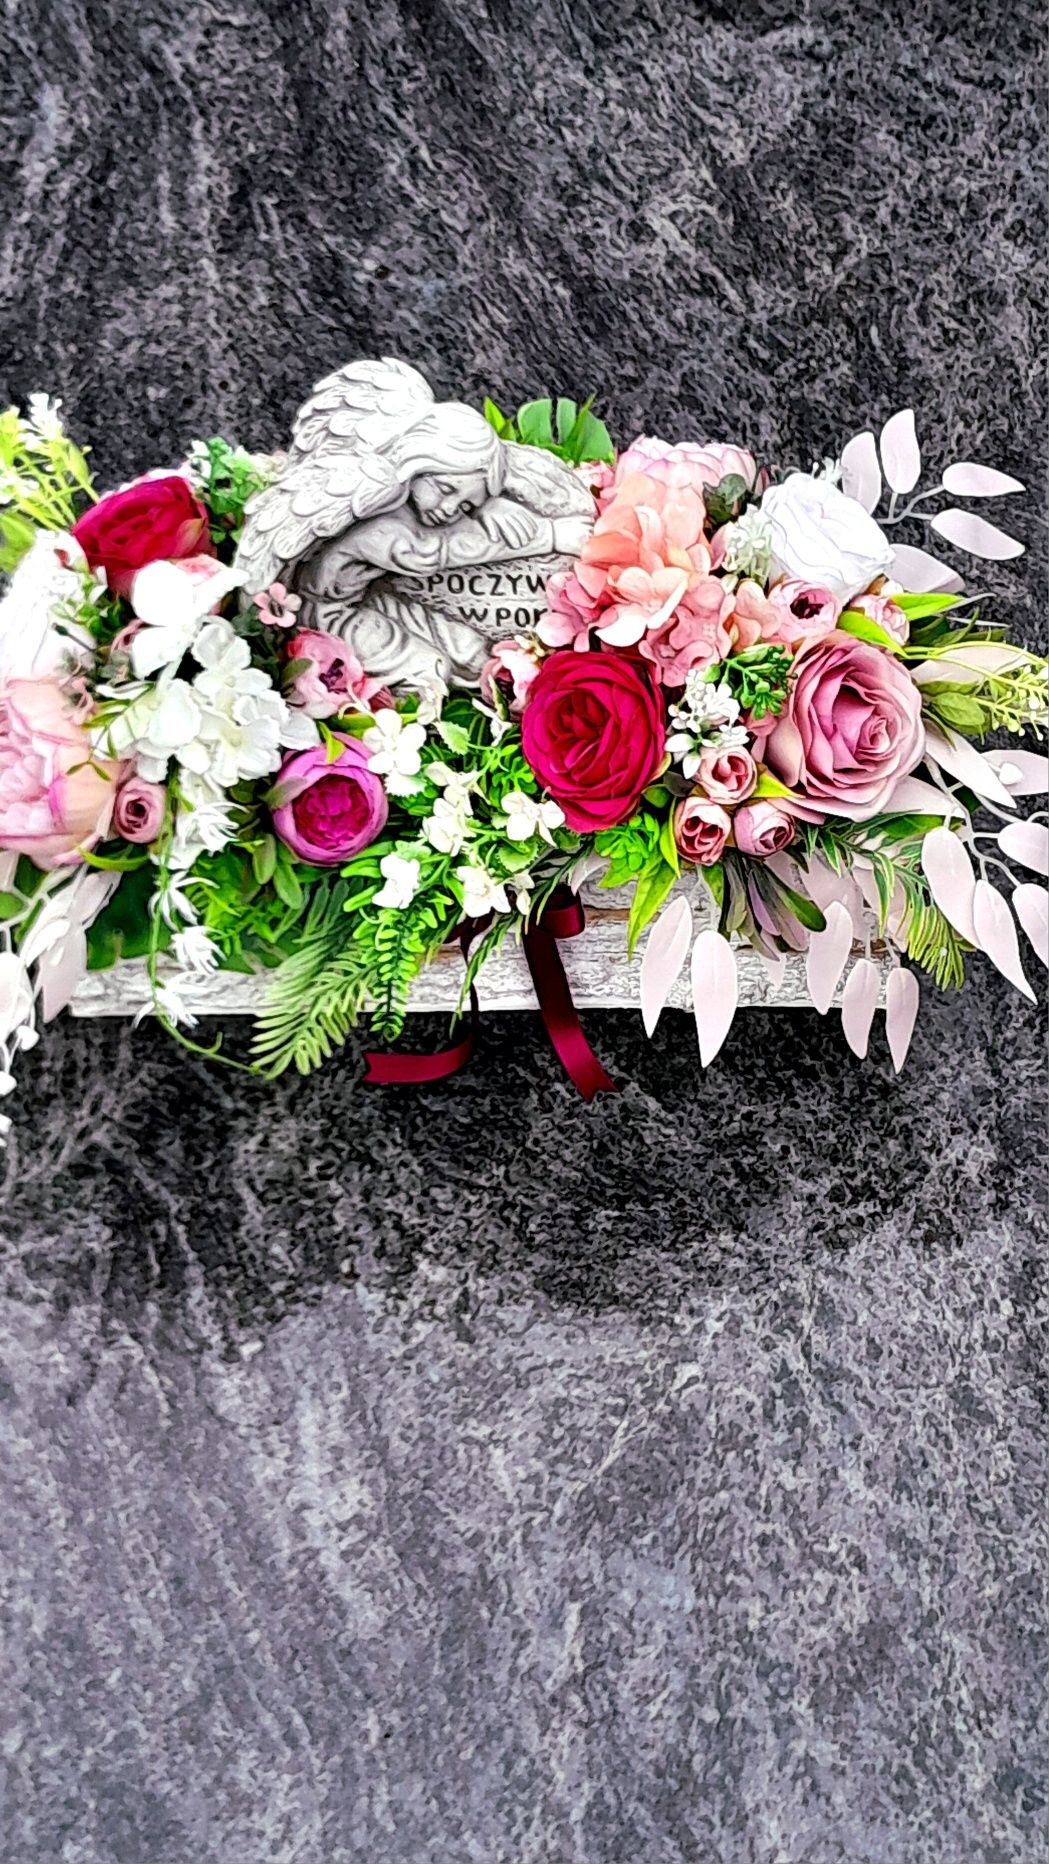 Stroik kompozycja wiązanka na cmentarz grób pomnik sztuczne kwiaty